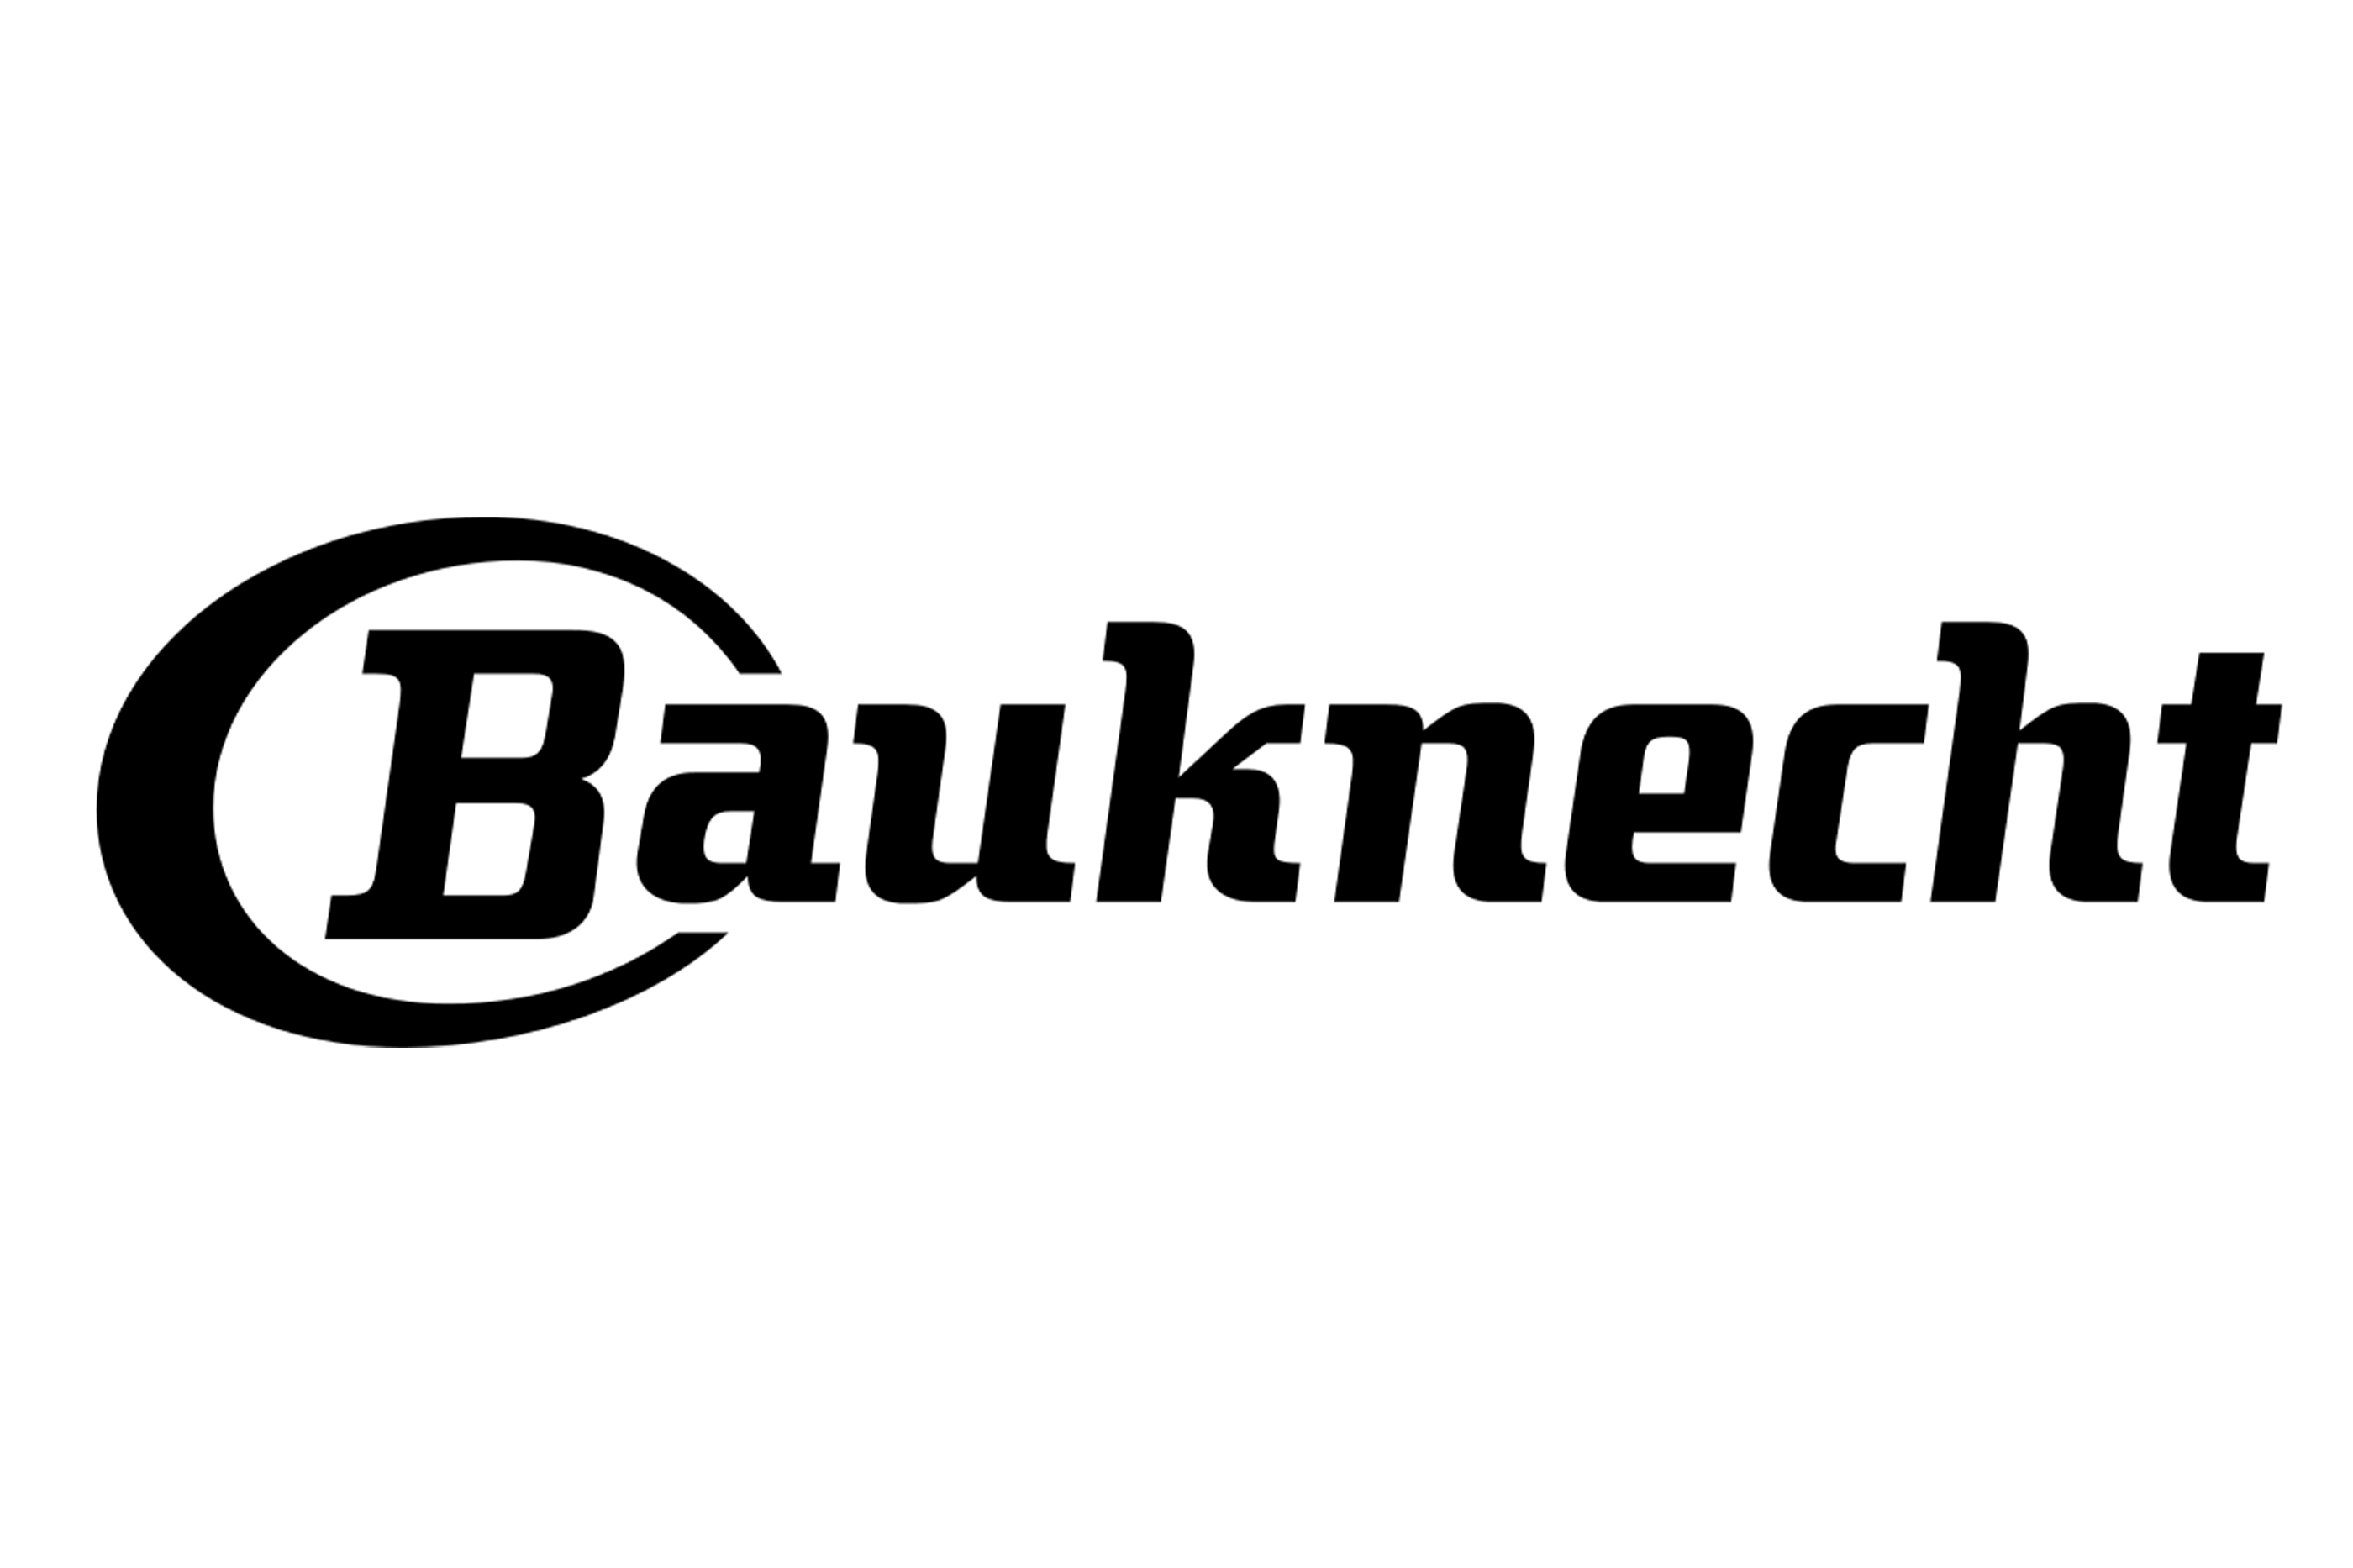 logo-bauknecht